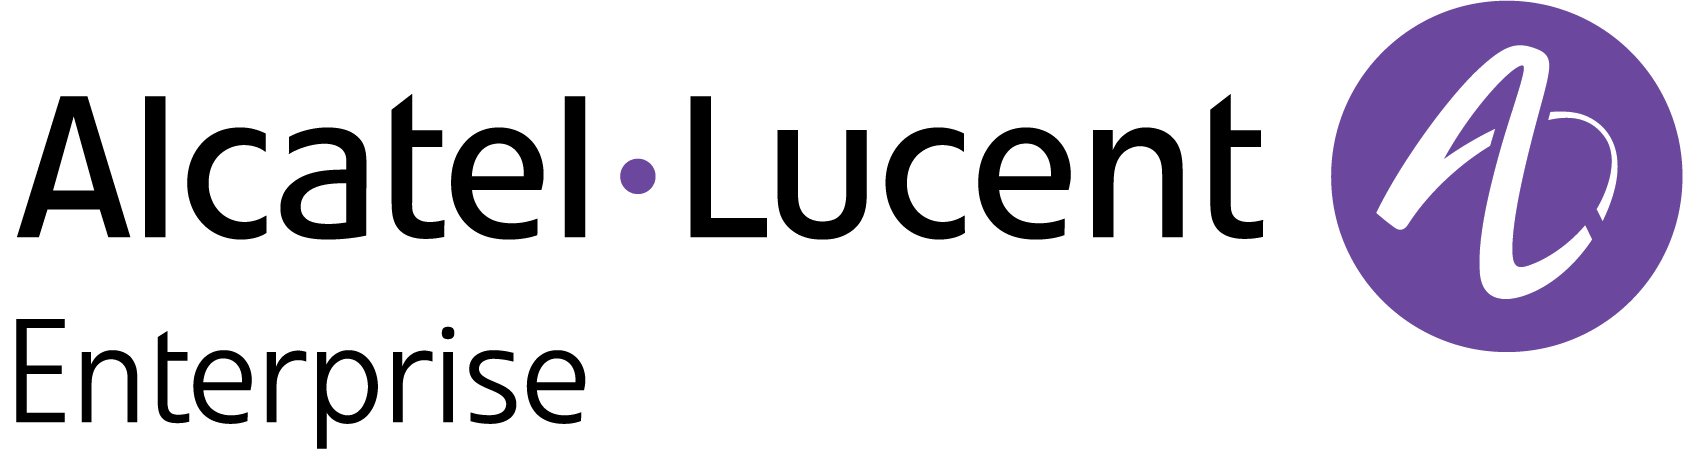 alcatel lucent enterprise logo